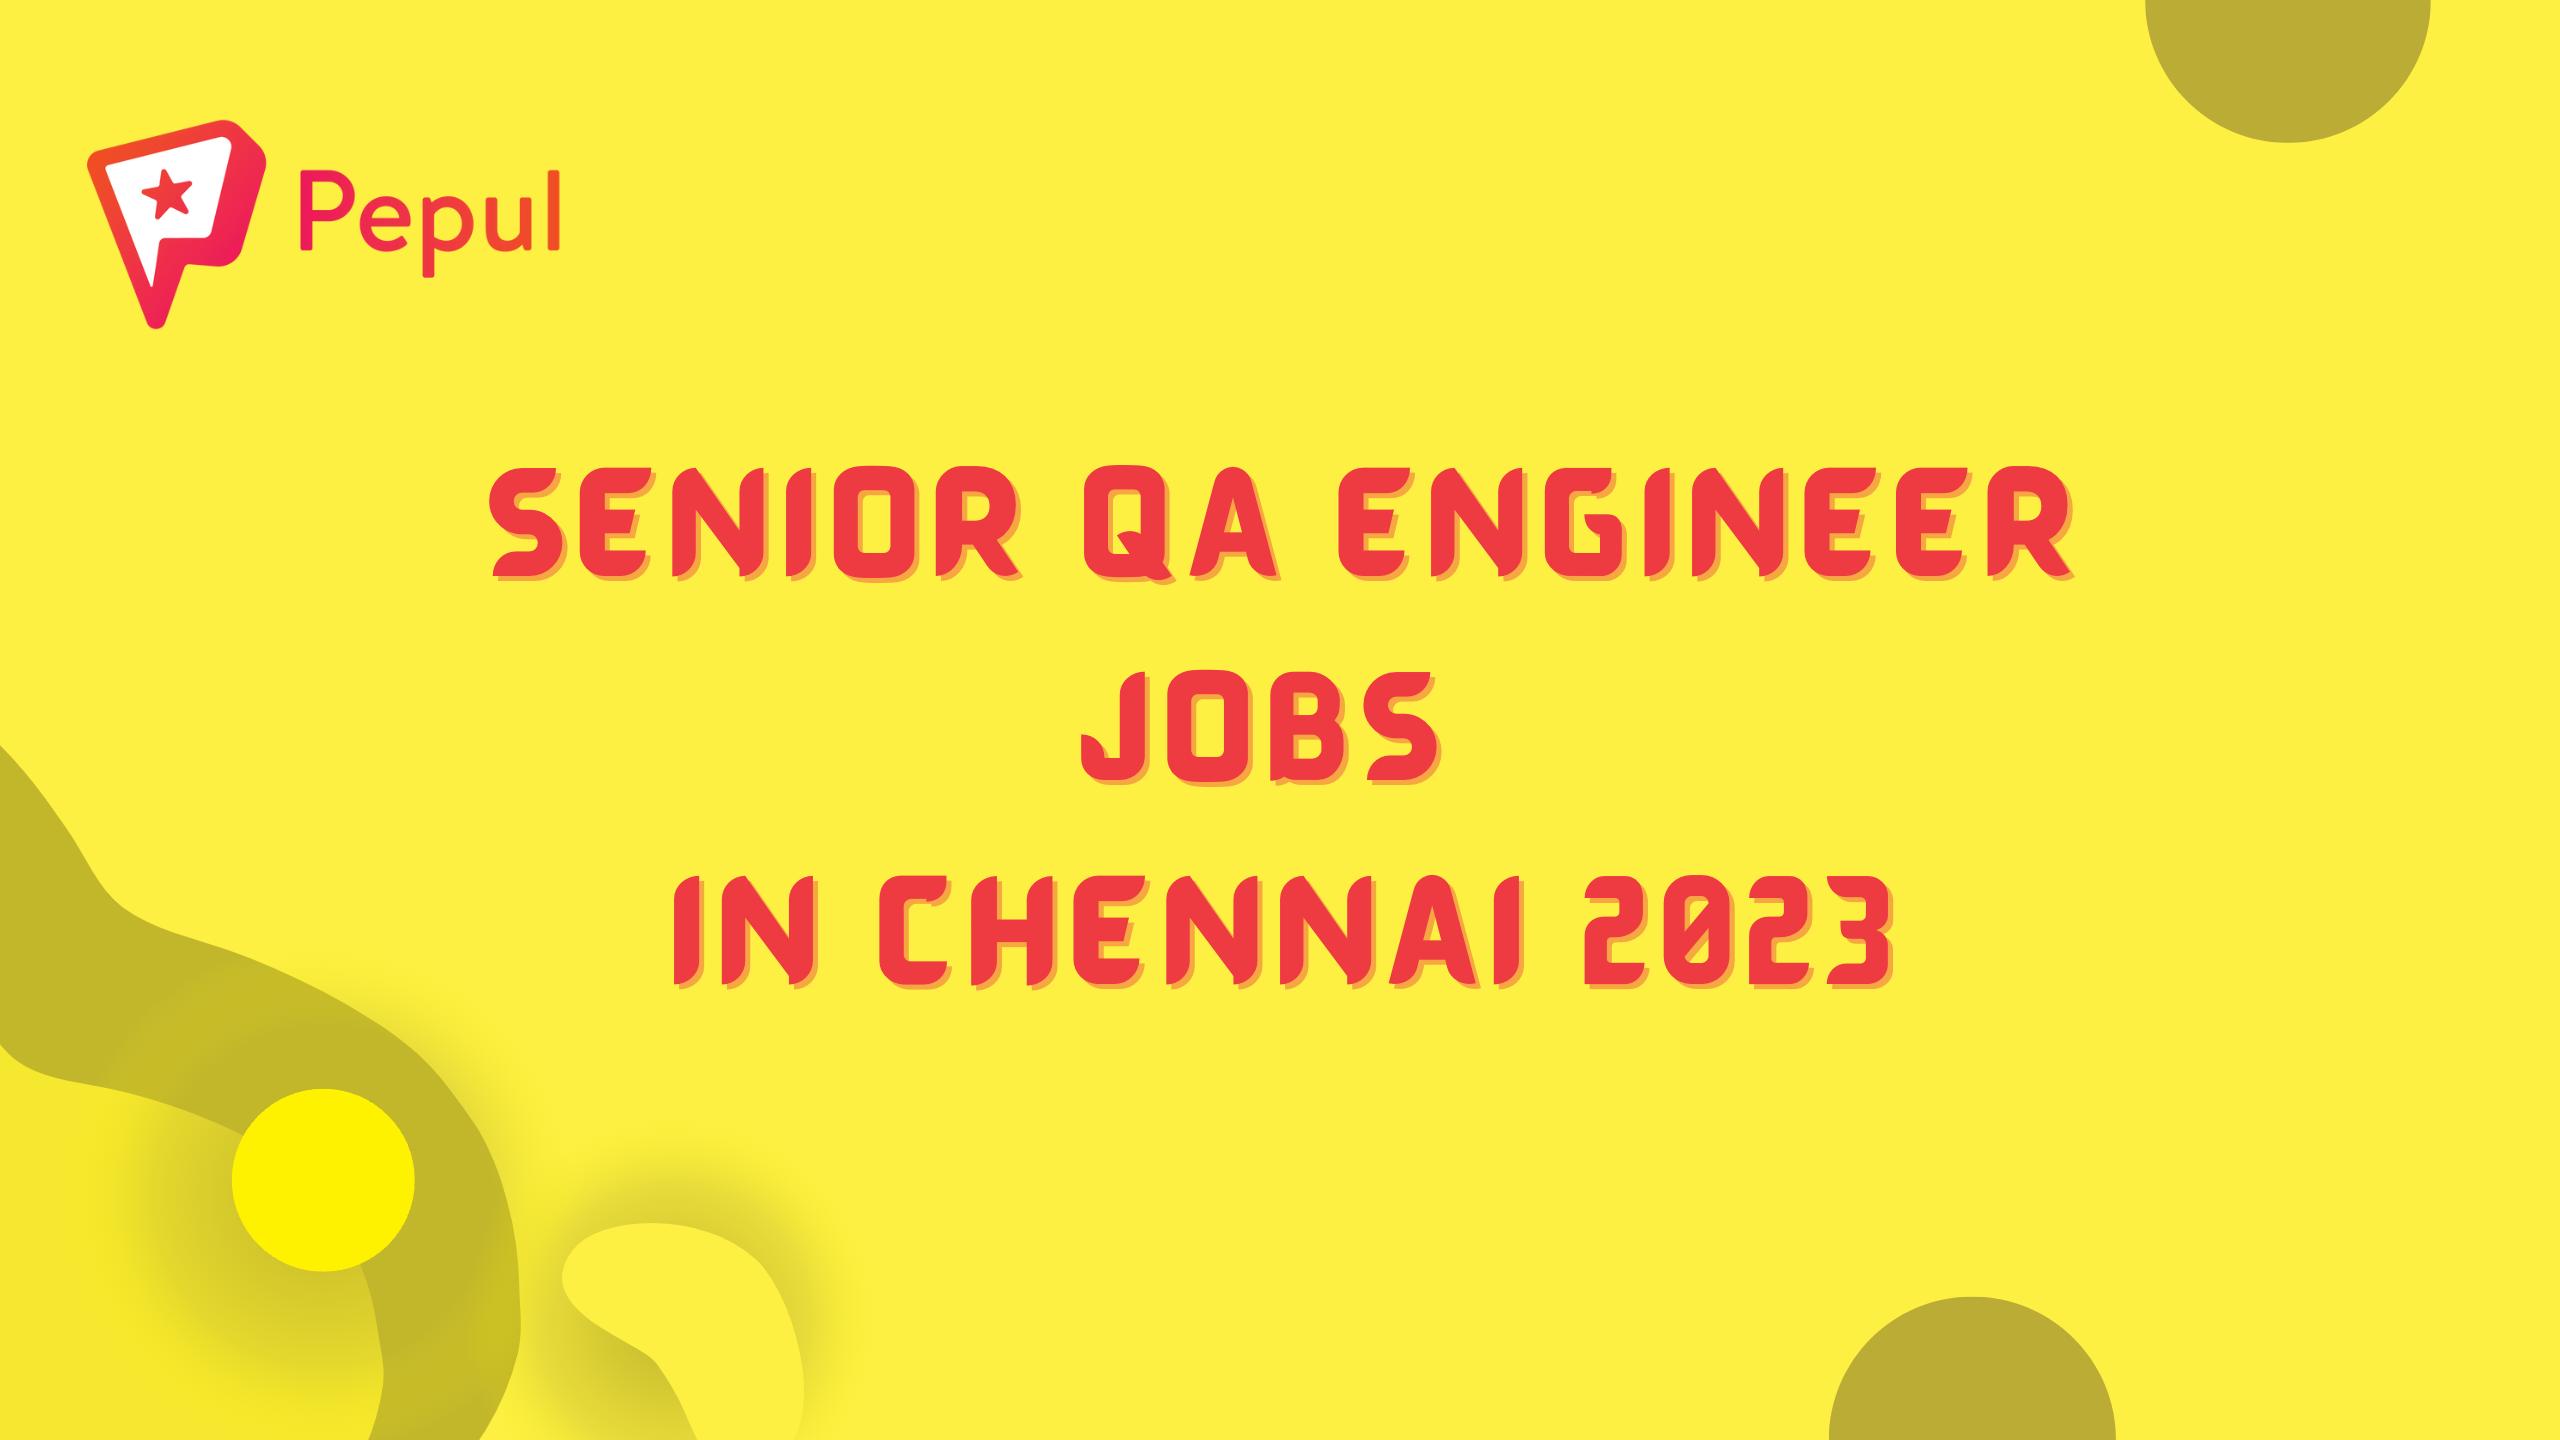 Senior QA Engineer Jobs in Chennai 2023